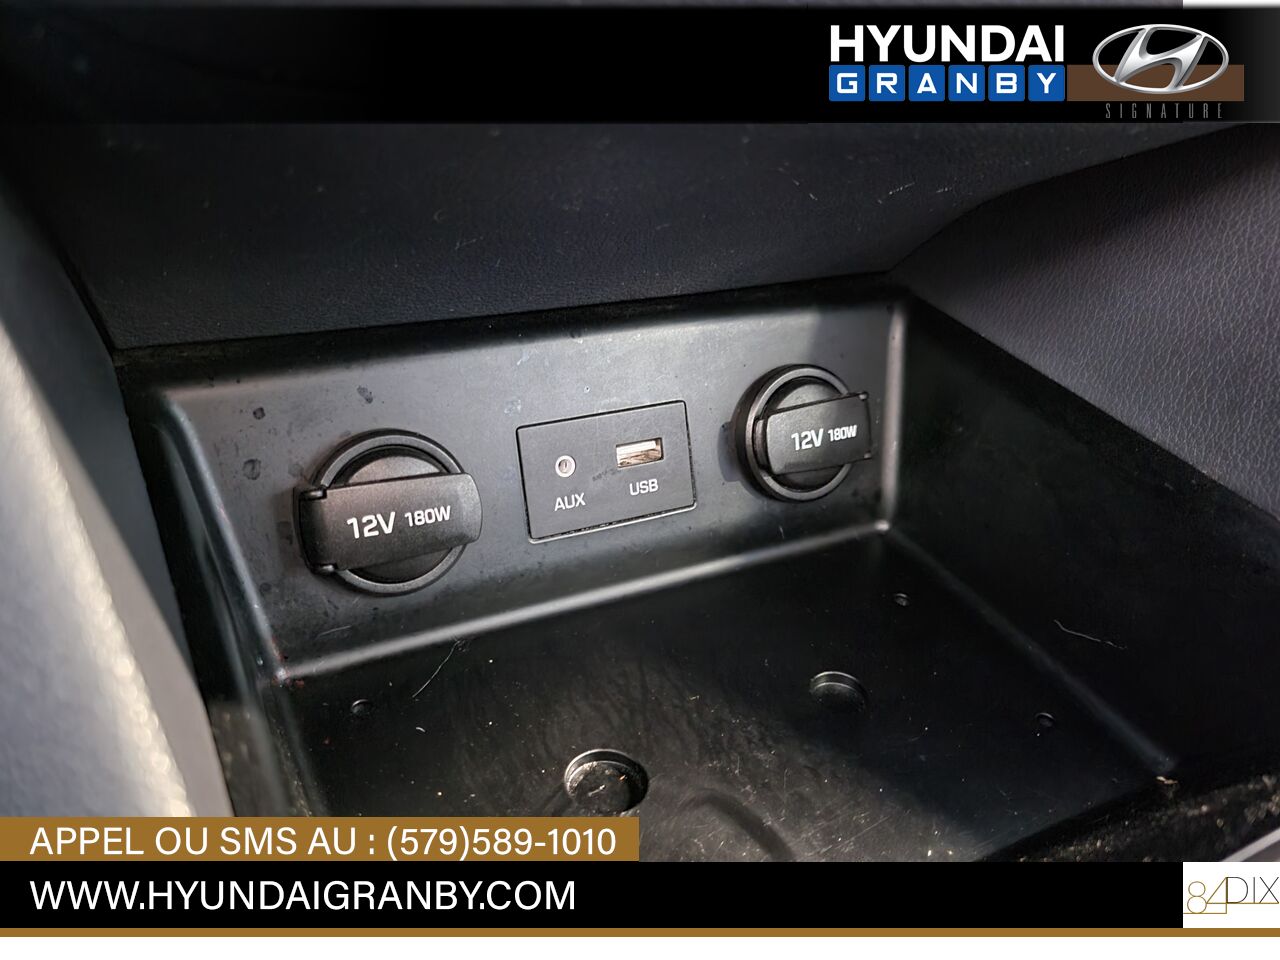 2019 Hyundai Ioniq électrique plus Granby - photo #25